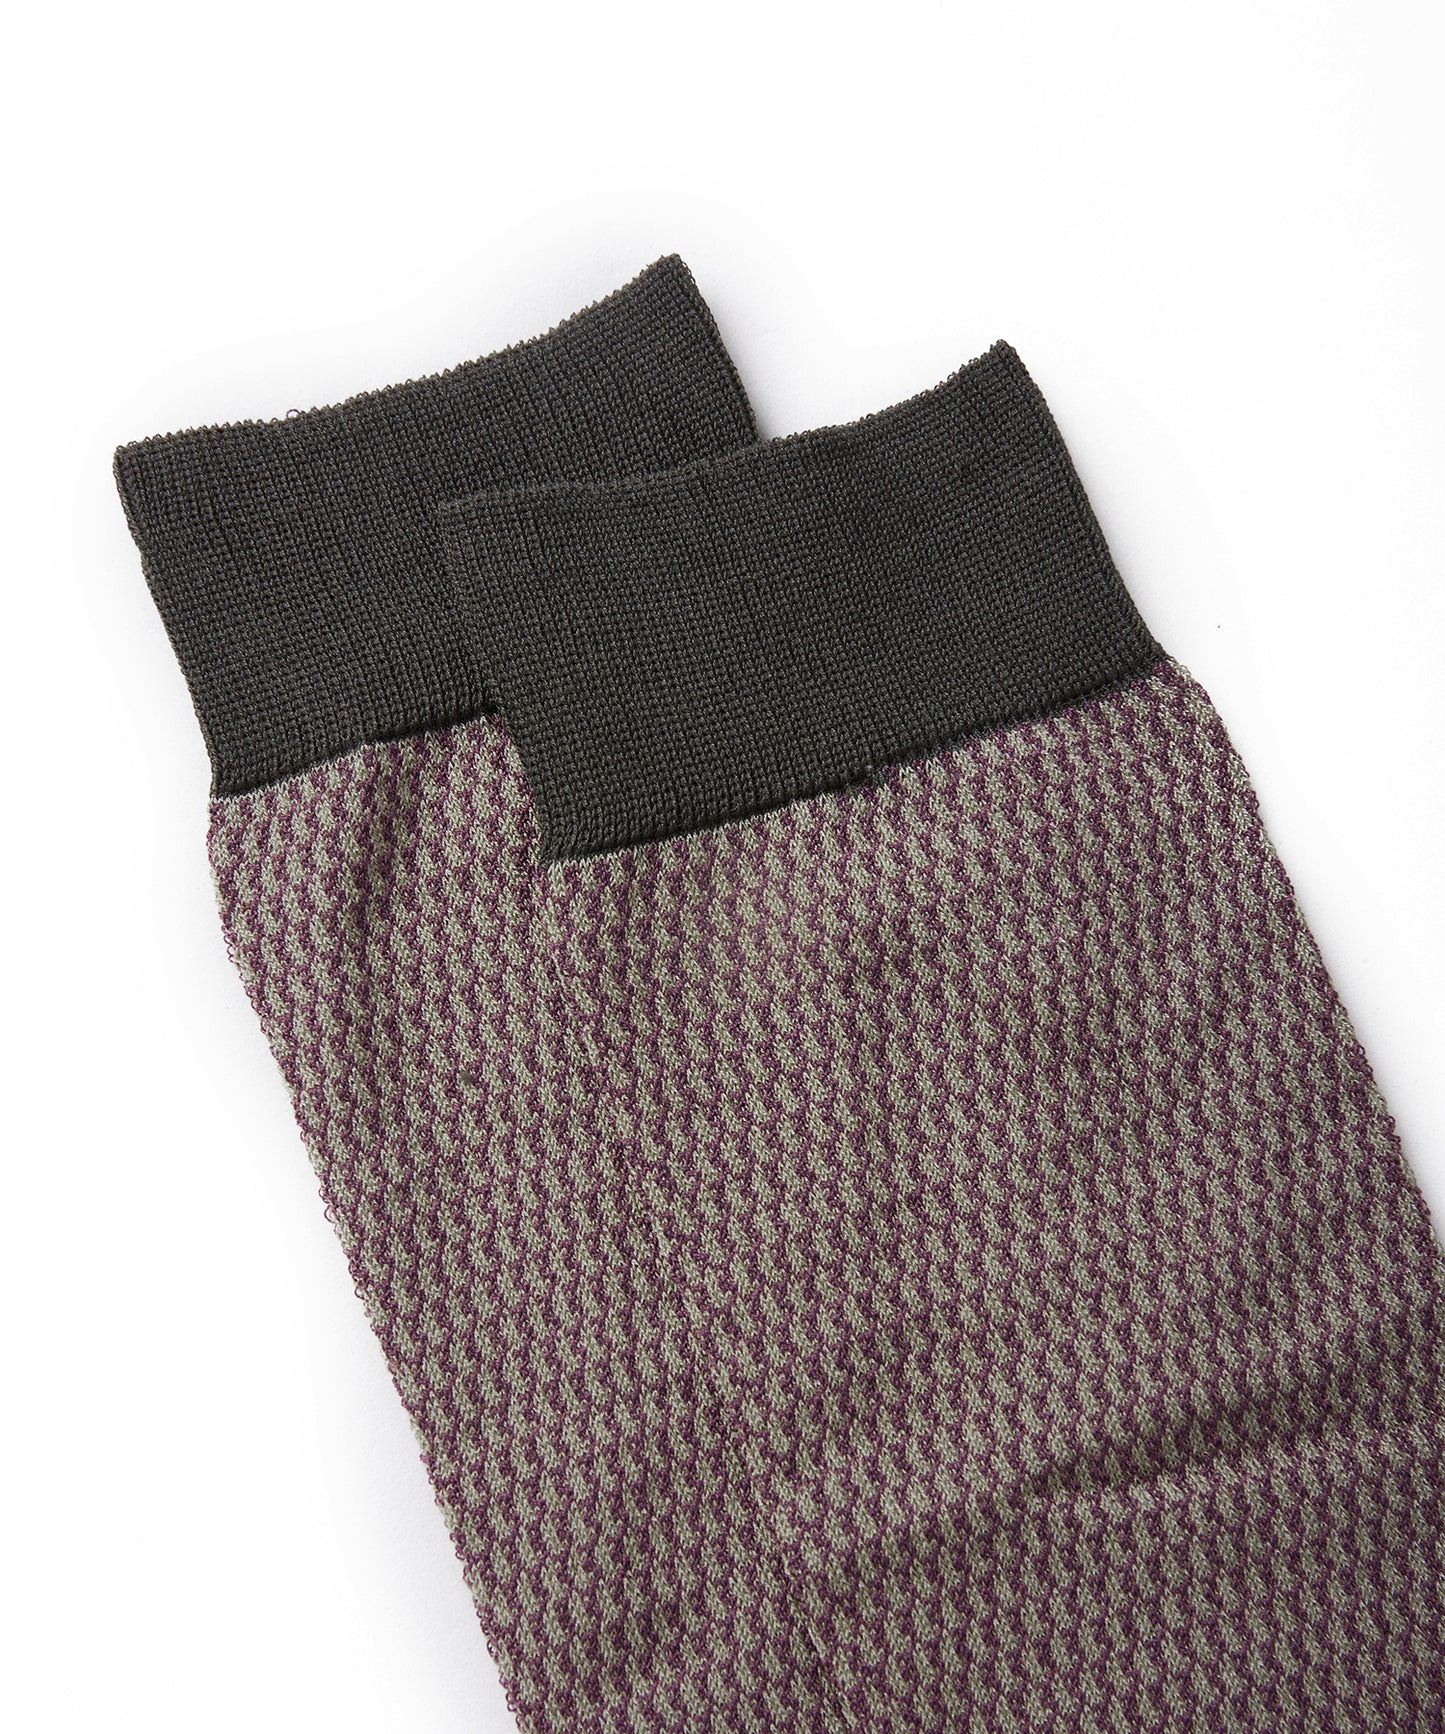 Geometric-jacquard Cotton-blend Socks